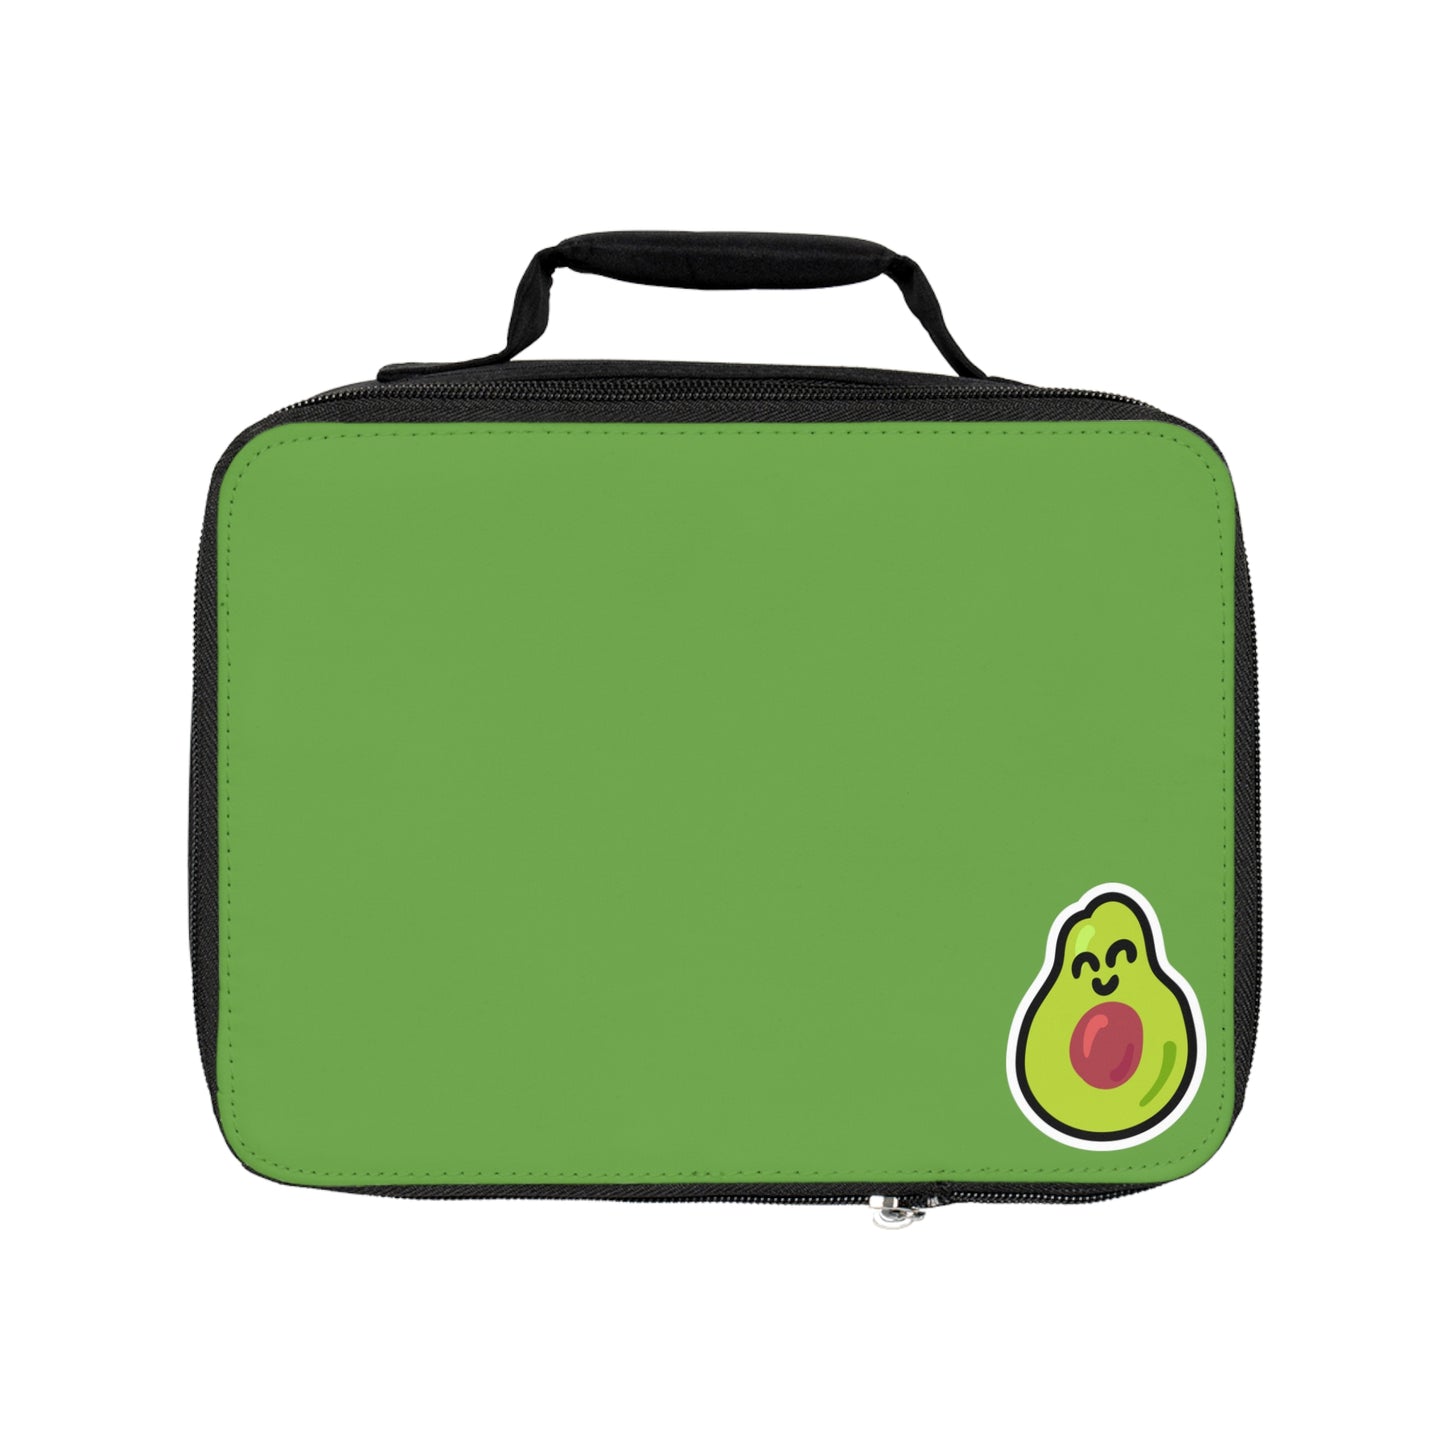 Avocado Zipper Storage/Lunch Bag